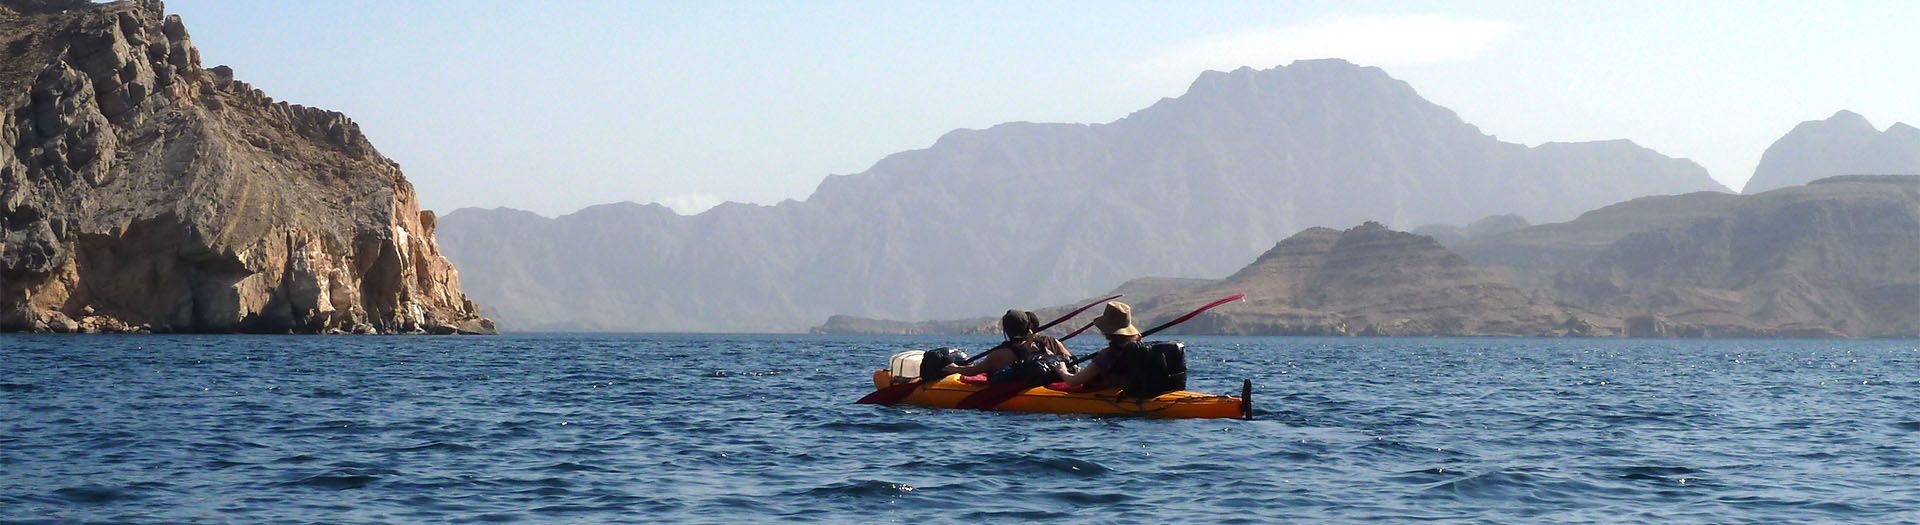 Kayaking hiking holidays Oman